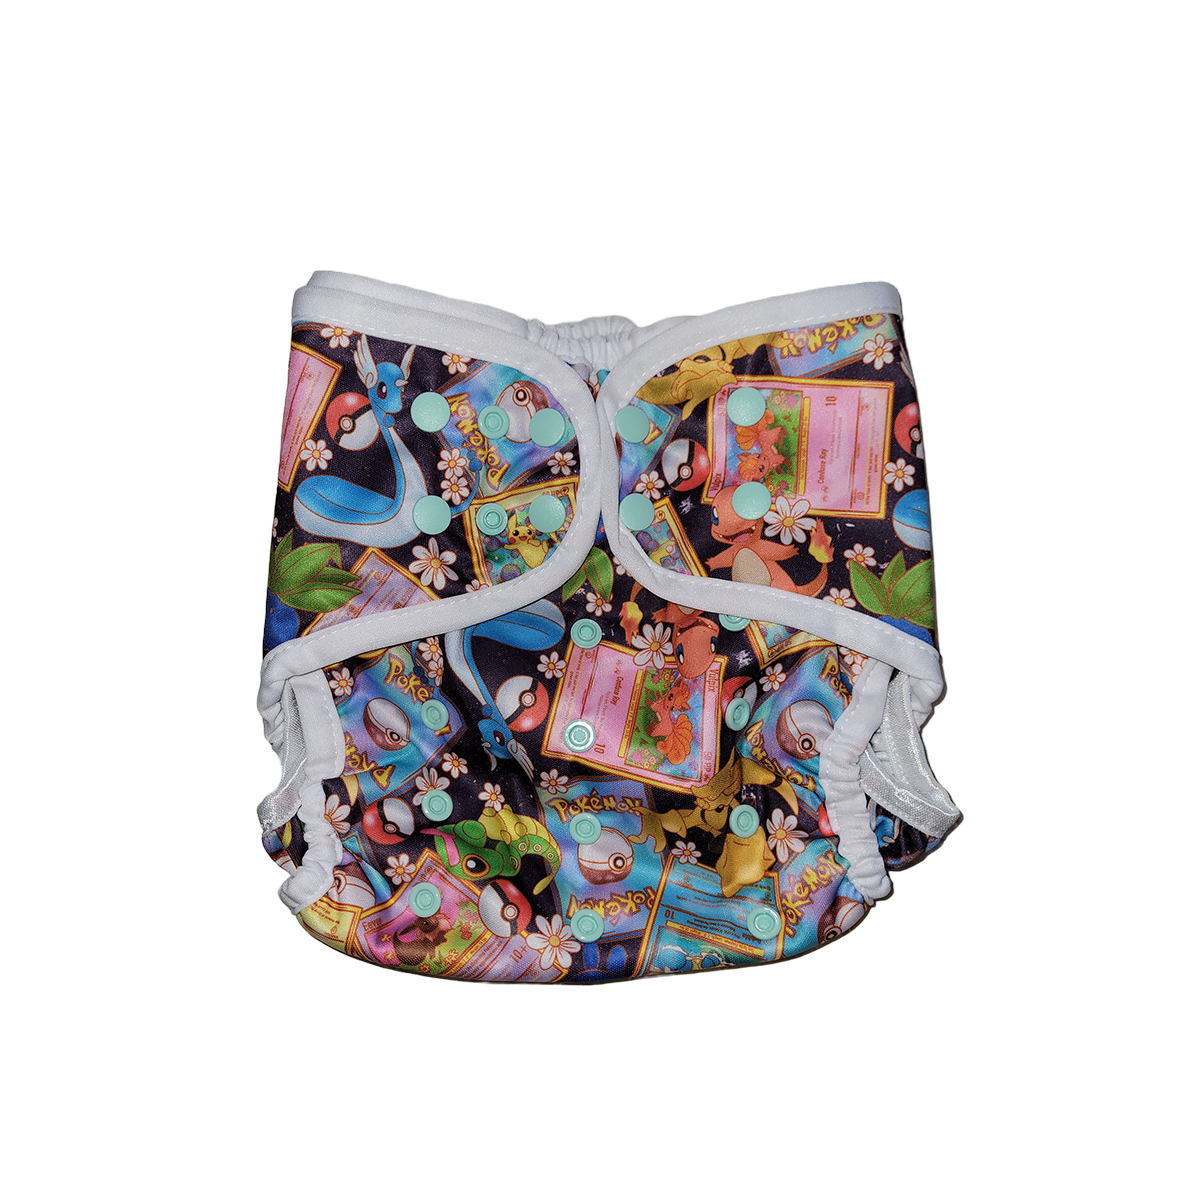 Diaper Cover sizes XL/Mega - Cynthia